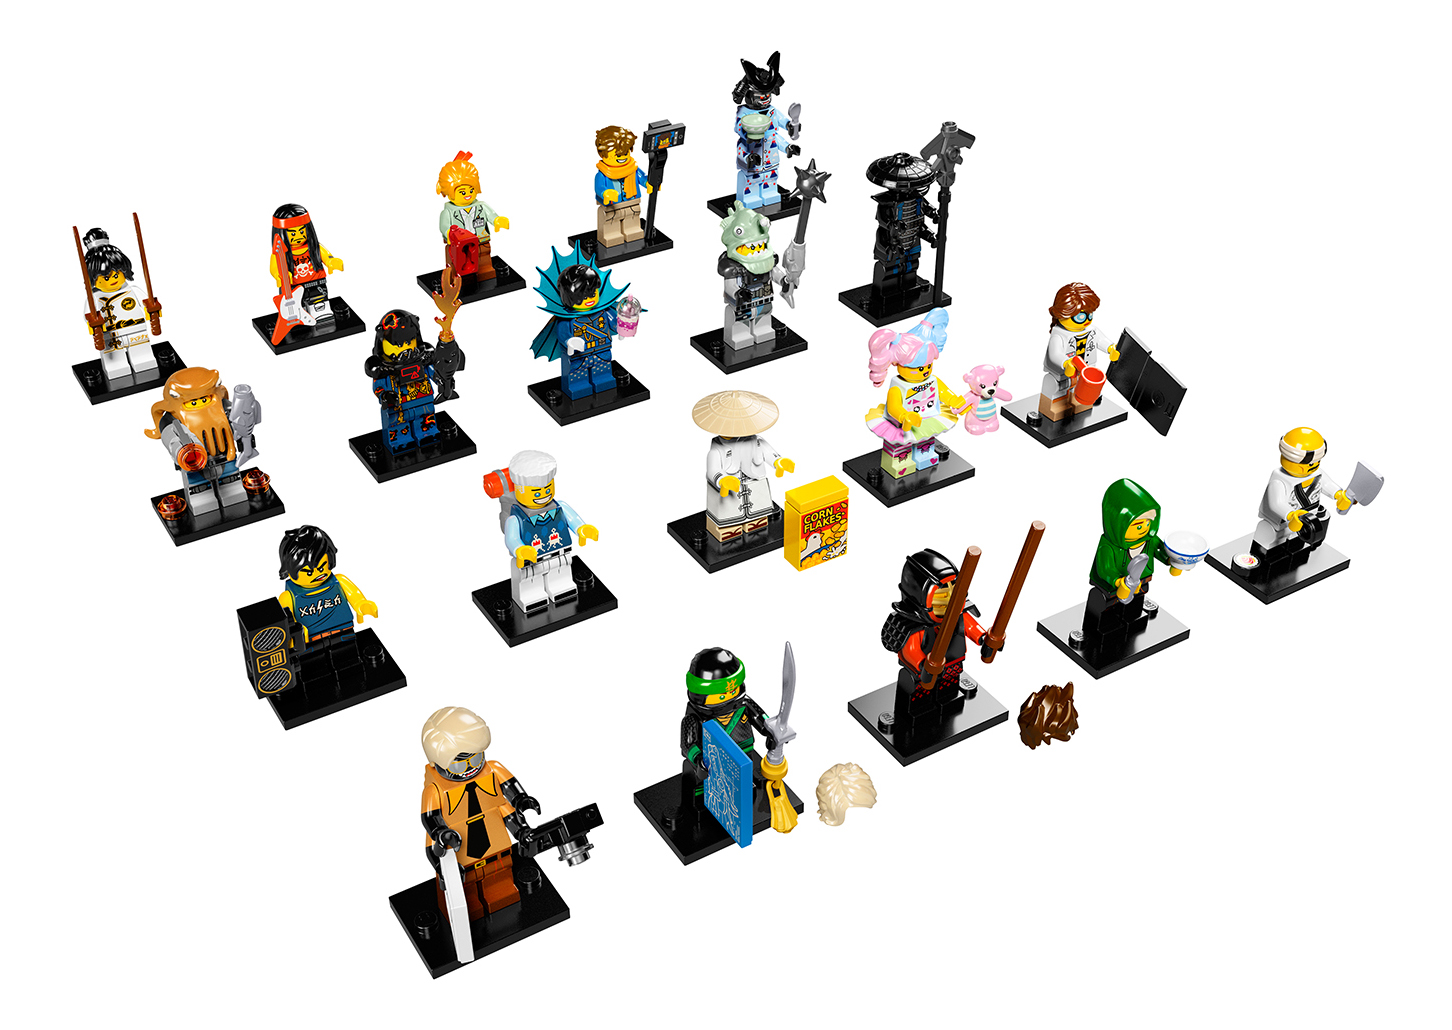 Конструктор lego minifigures минифигурки lego, лего фильм: ниндзяго (71019), Минифигурка LEGO Minifigures LEGO, ЛЕГО фильм: Ниндзяго (71019), в ассортименте 1шт., для девочек; для мальчиков  - купить